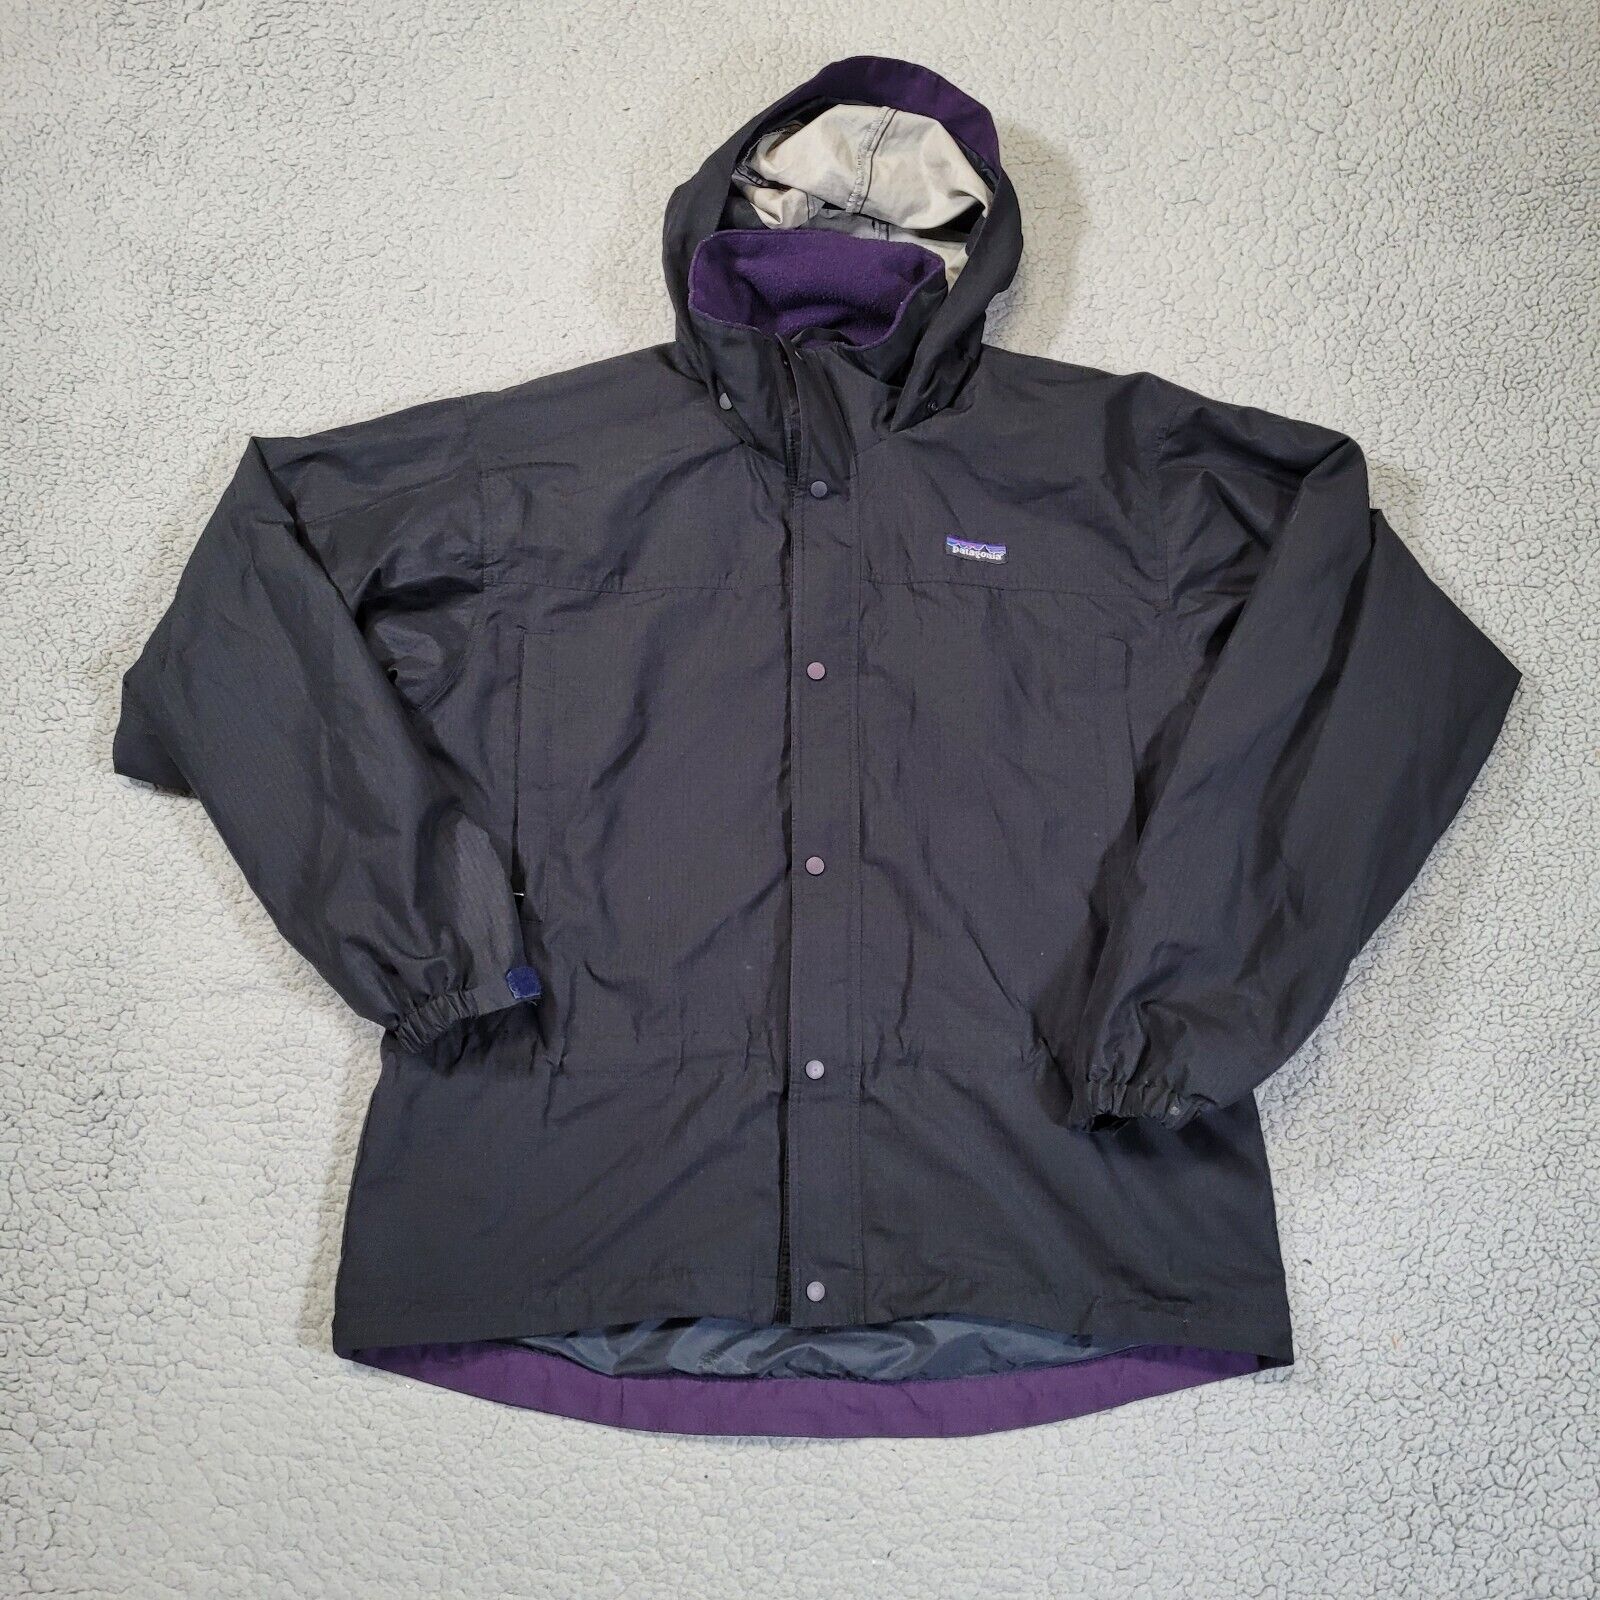 Vintage Patagonia Parka Jacket M Black Zip Snap Hooded Long Sleeve Outdoors